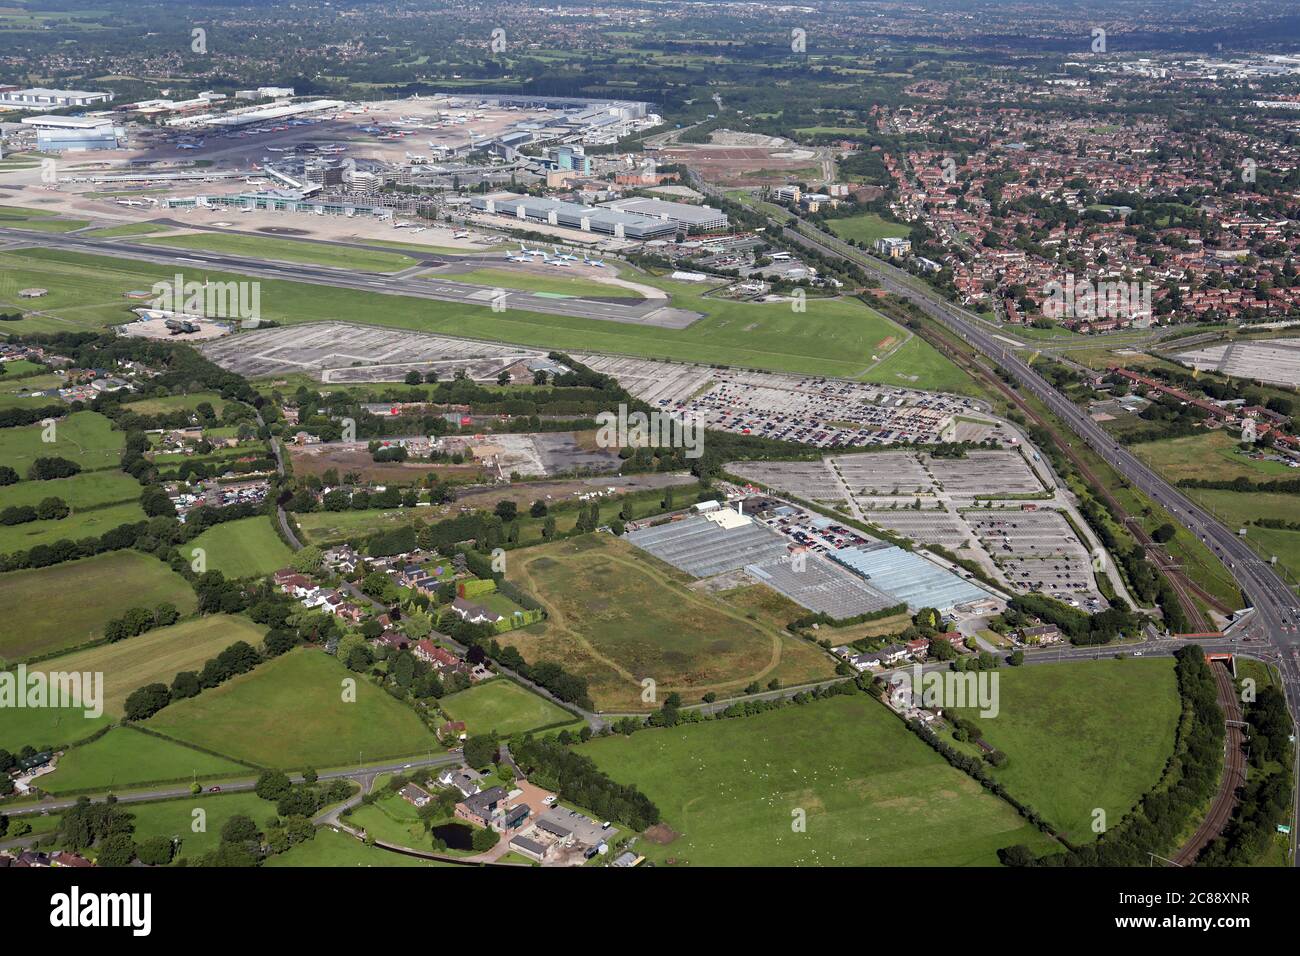 Vista aérea de los diversos aparcamientos del aeropuerto de Manchester Foto de stock